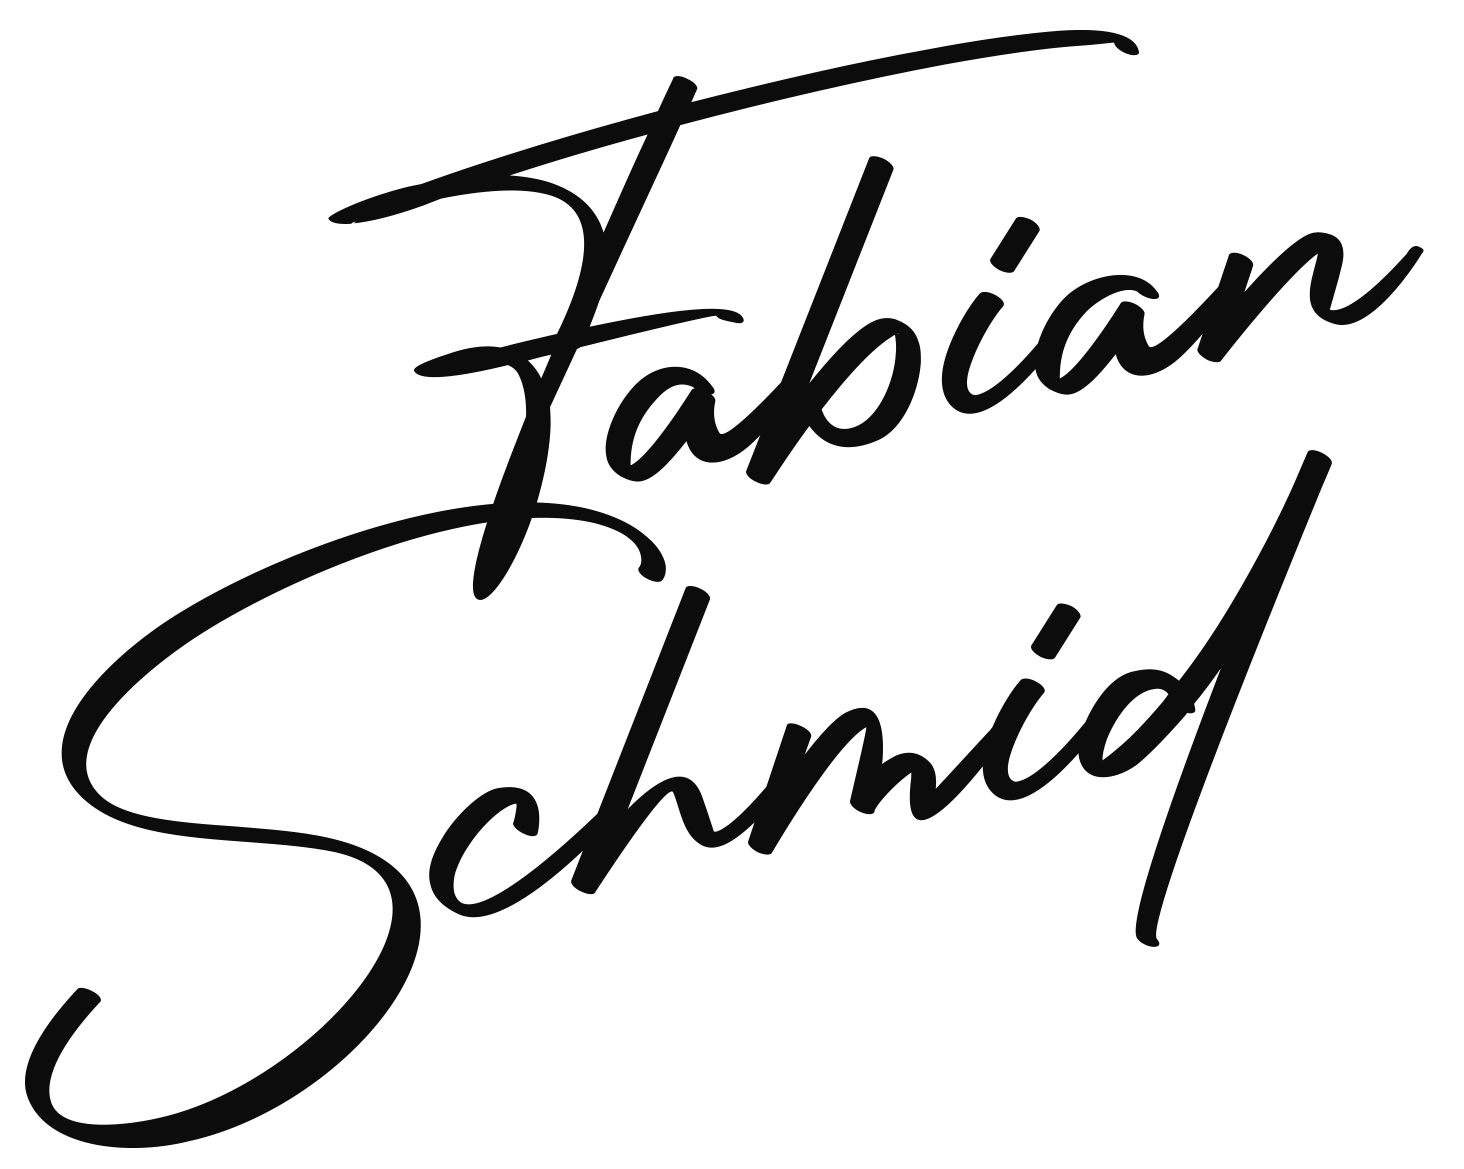 Fabian Schmid